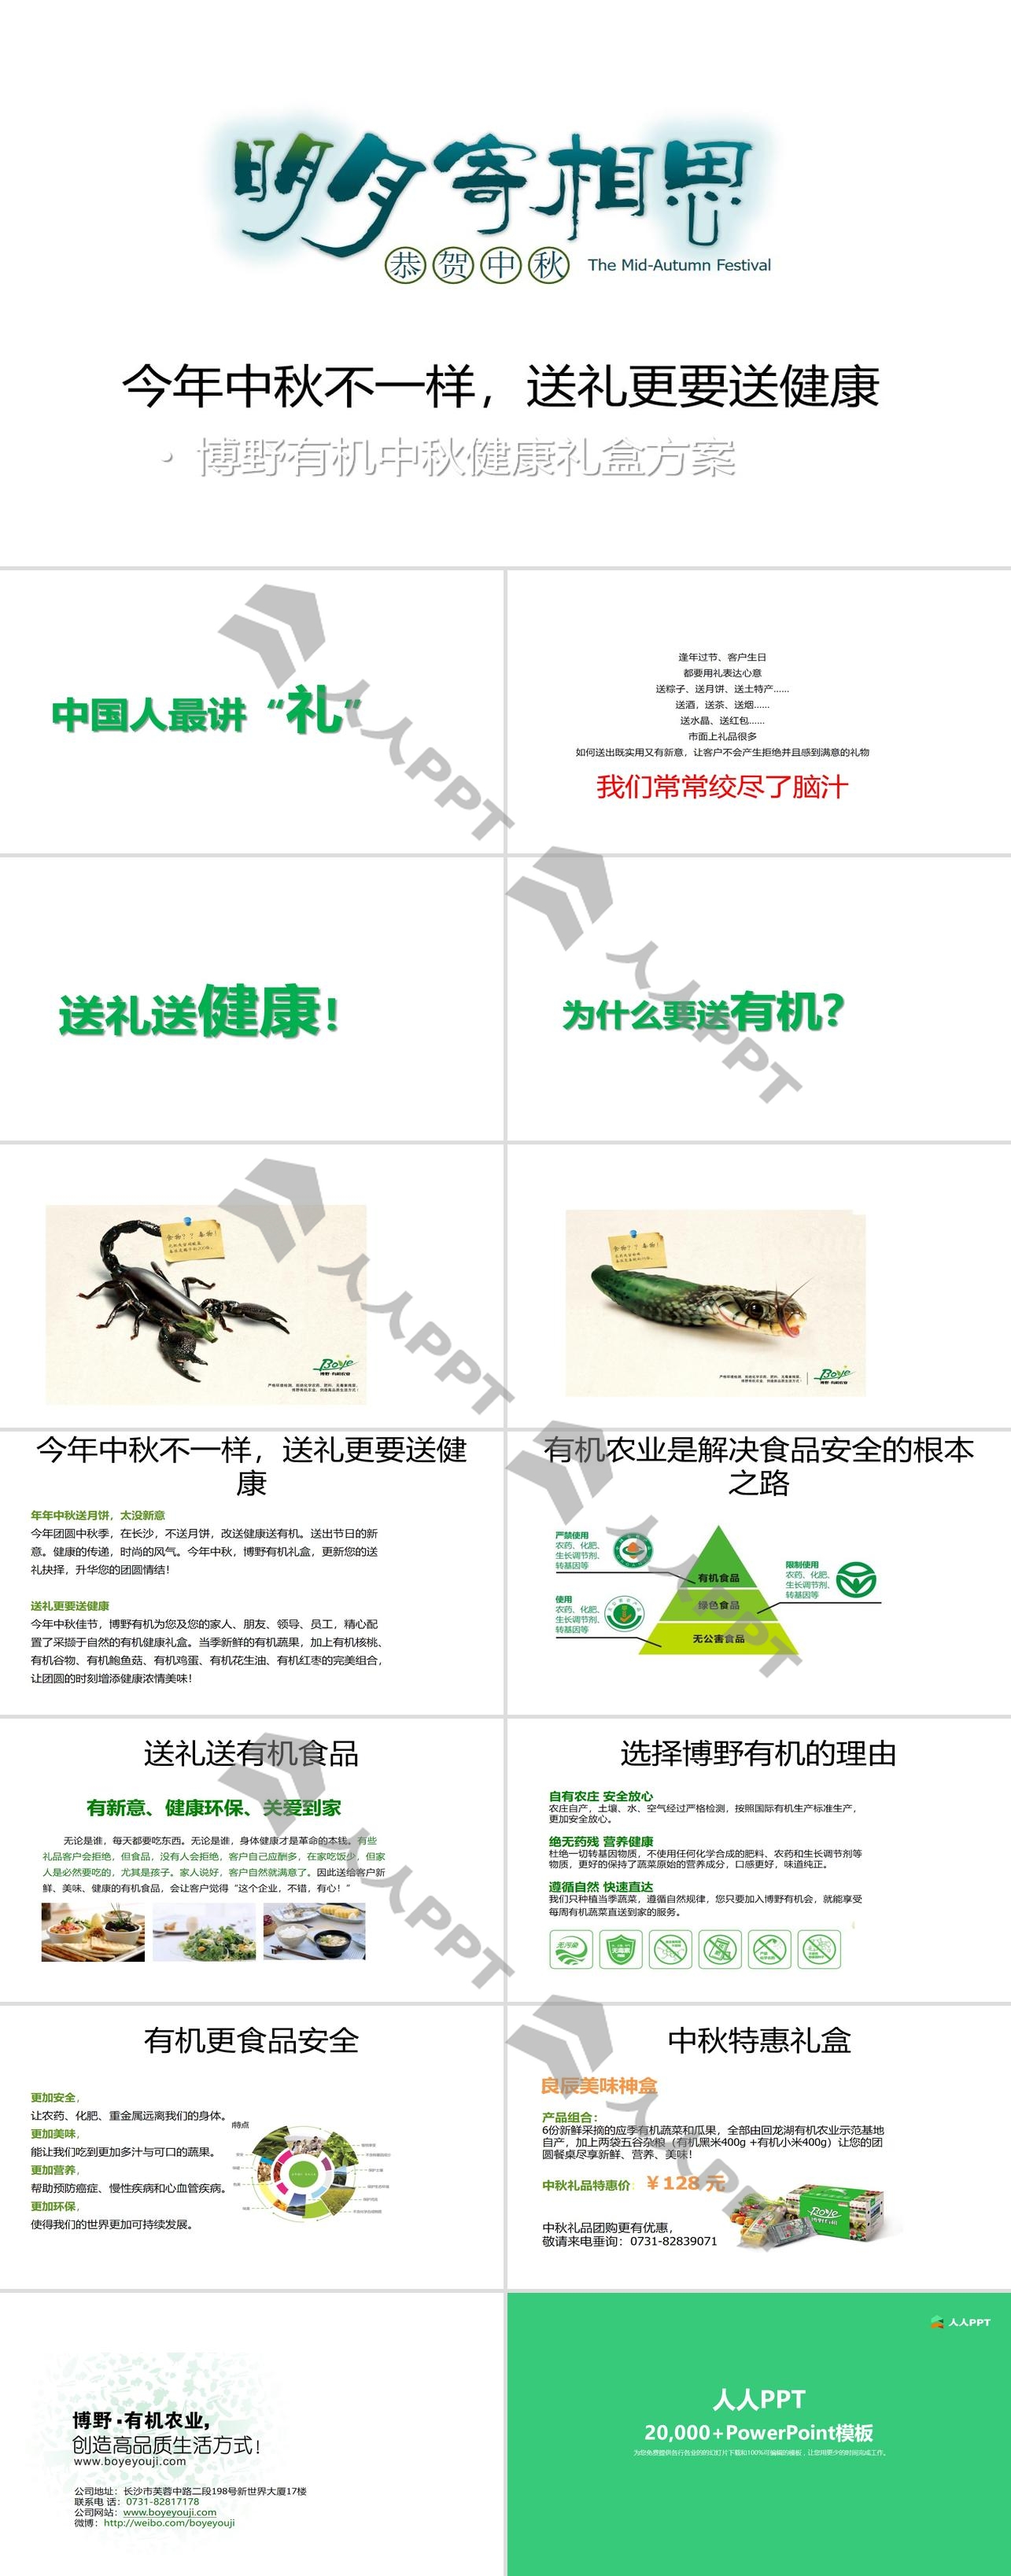 绿色食品公司中秋节宣传PPT模板长图